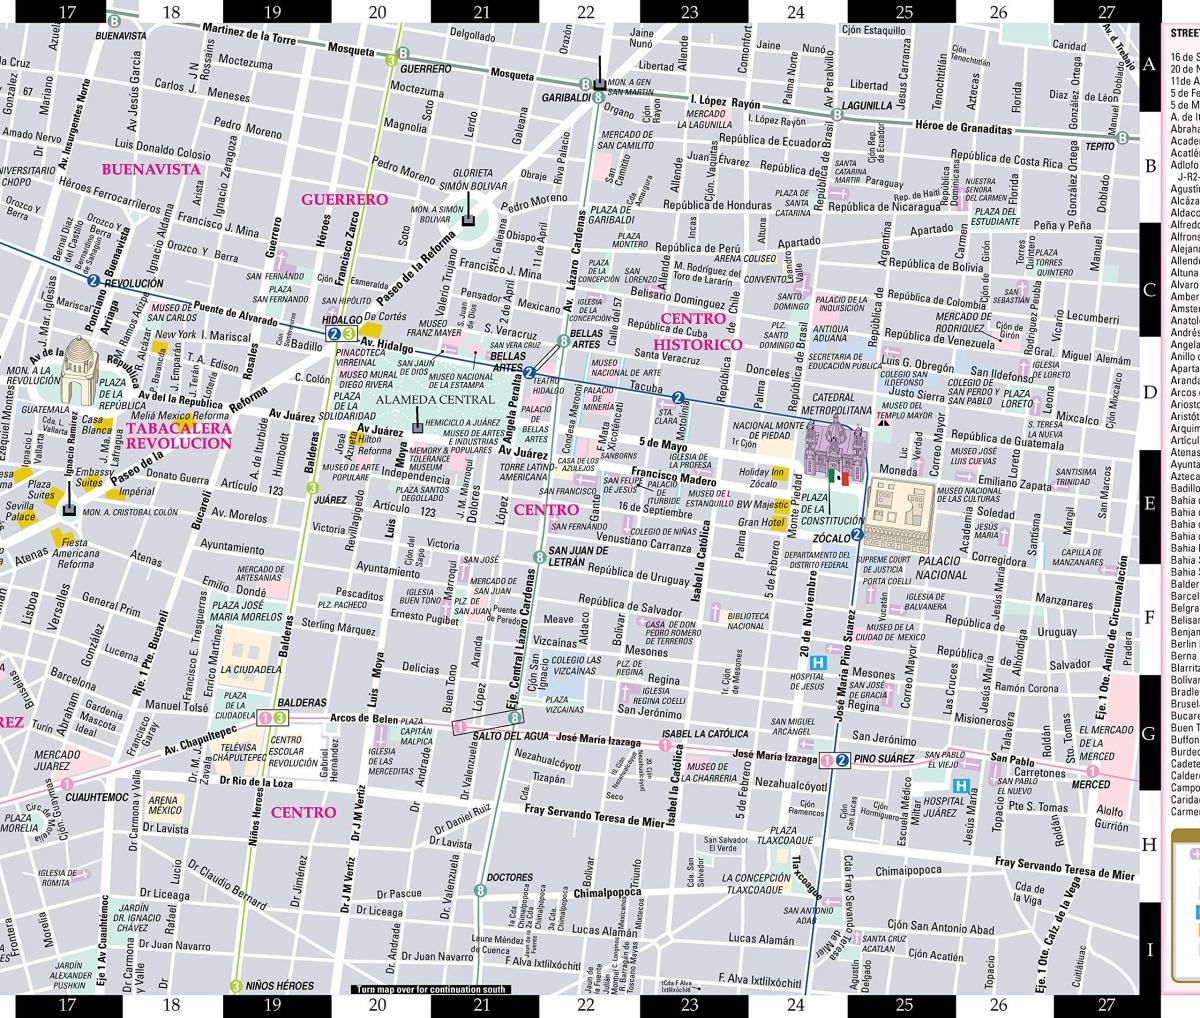 מפה של חוכמת רחוב במקסיקו סיטי